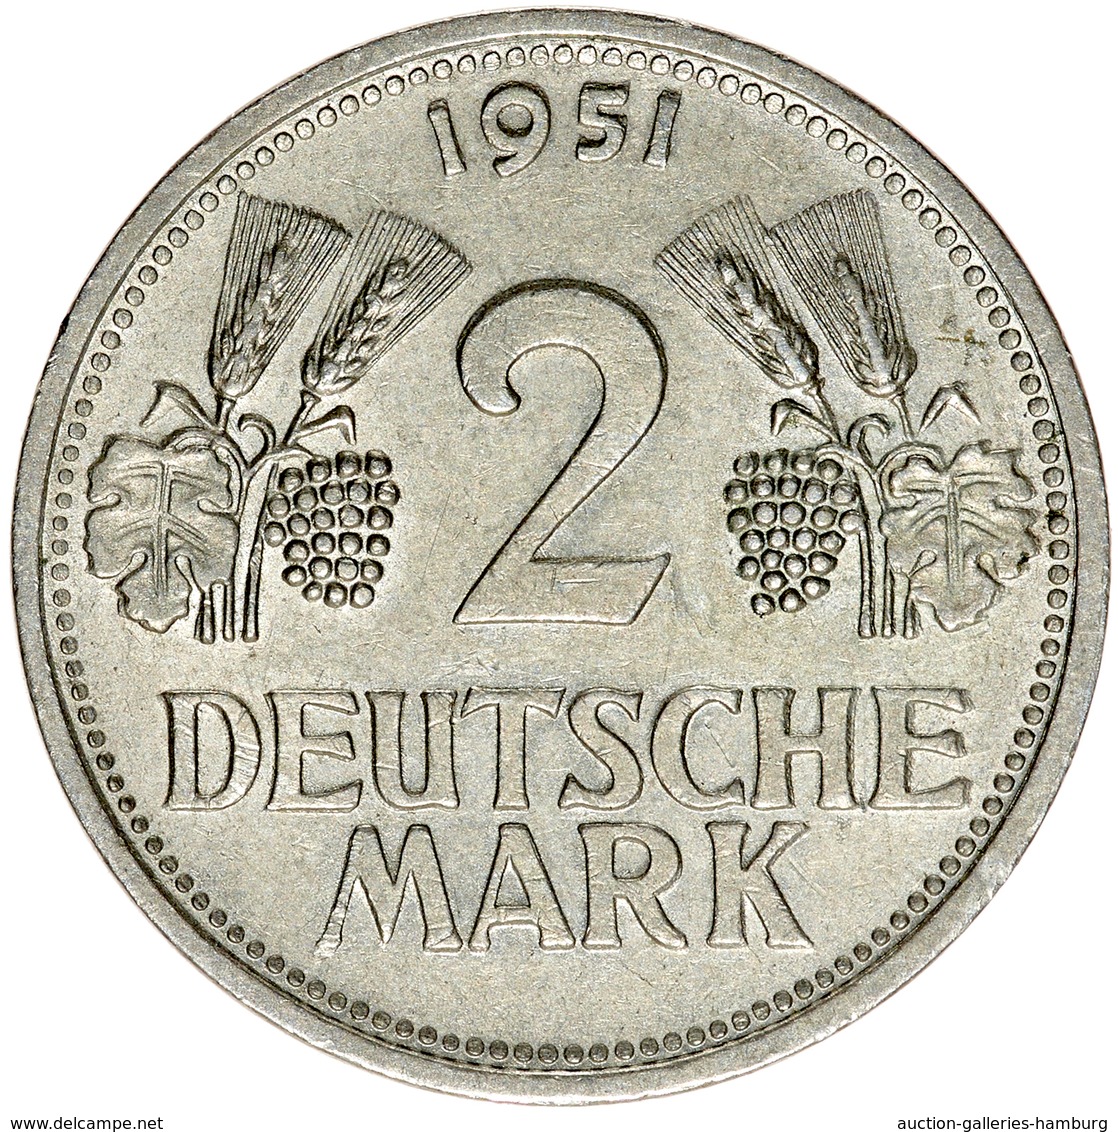 Bundesrepublik Deutschland 1948-2001: 1951, 2 Mark Kursmünze, jeweils aus den Prägestätten D, F, G u